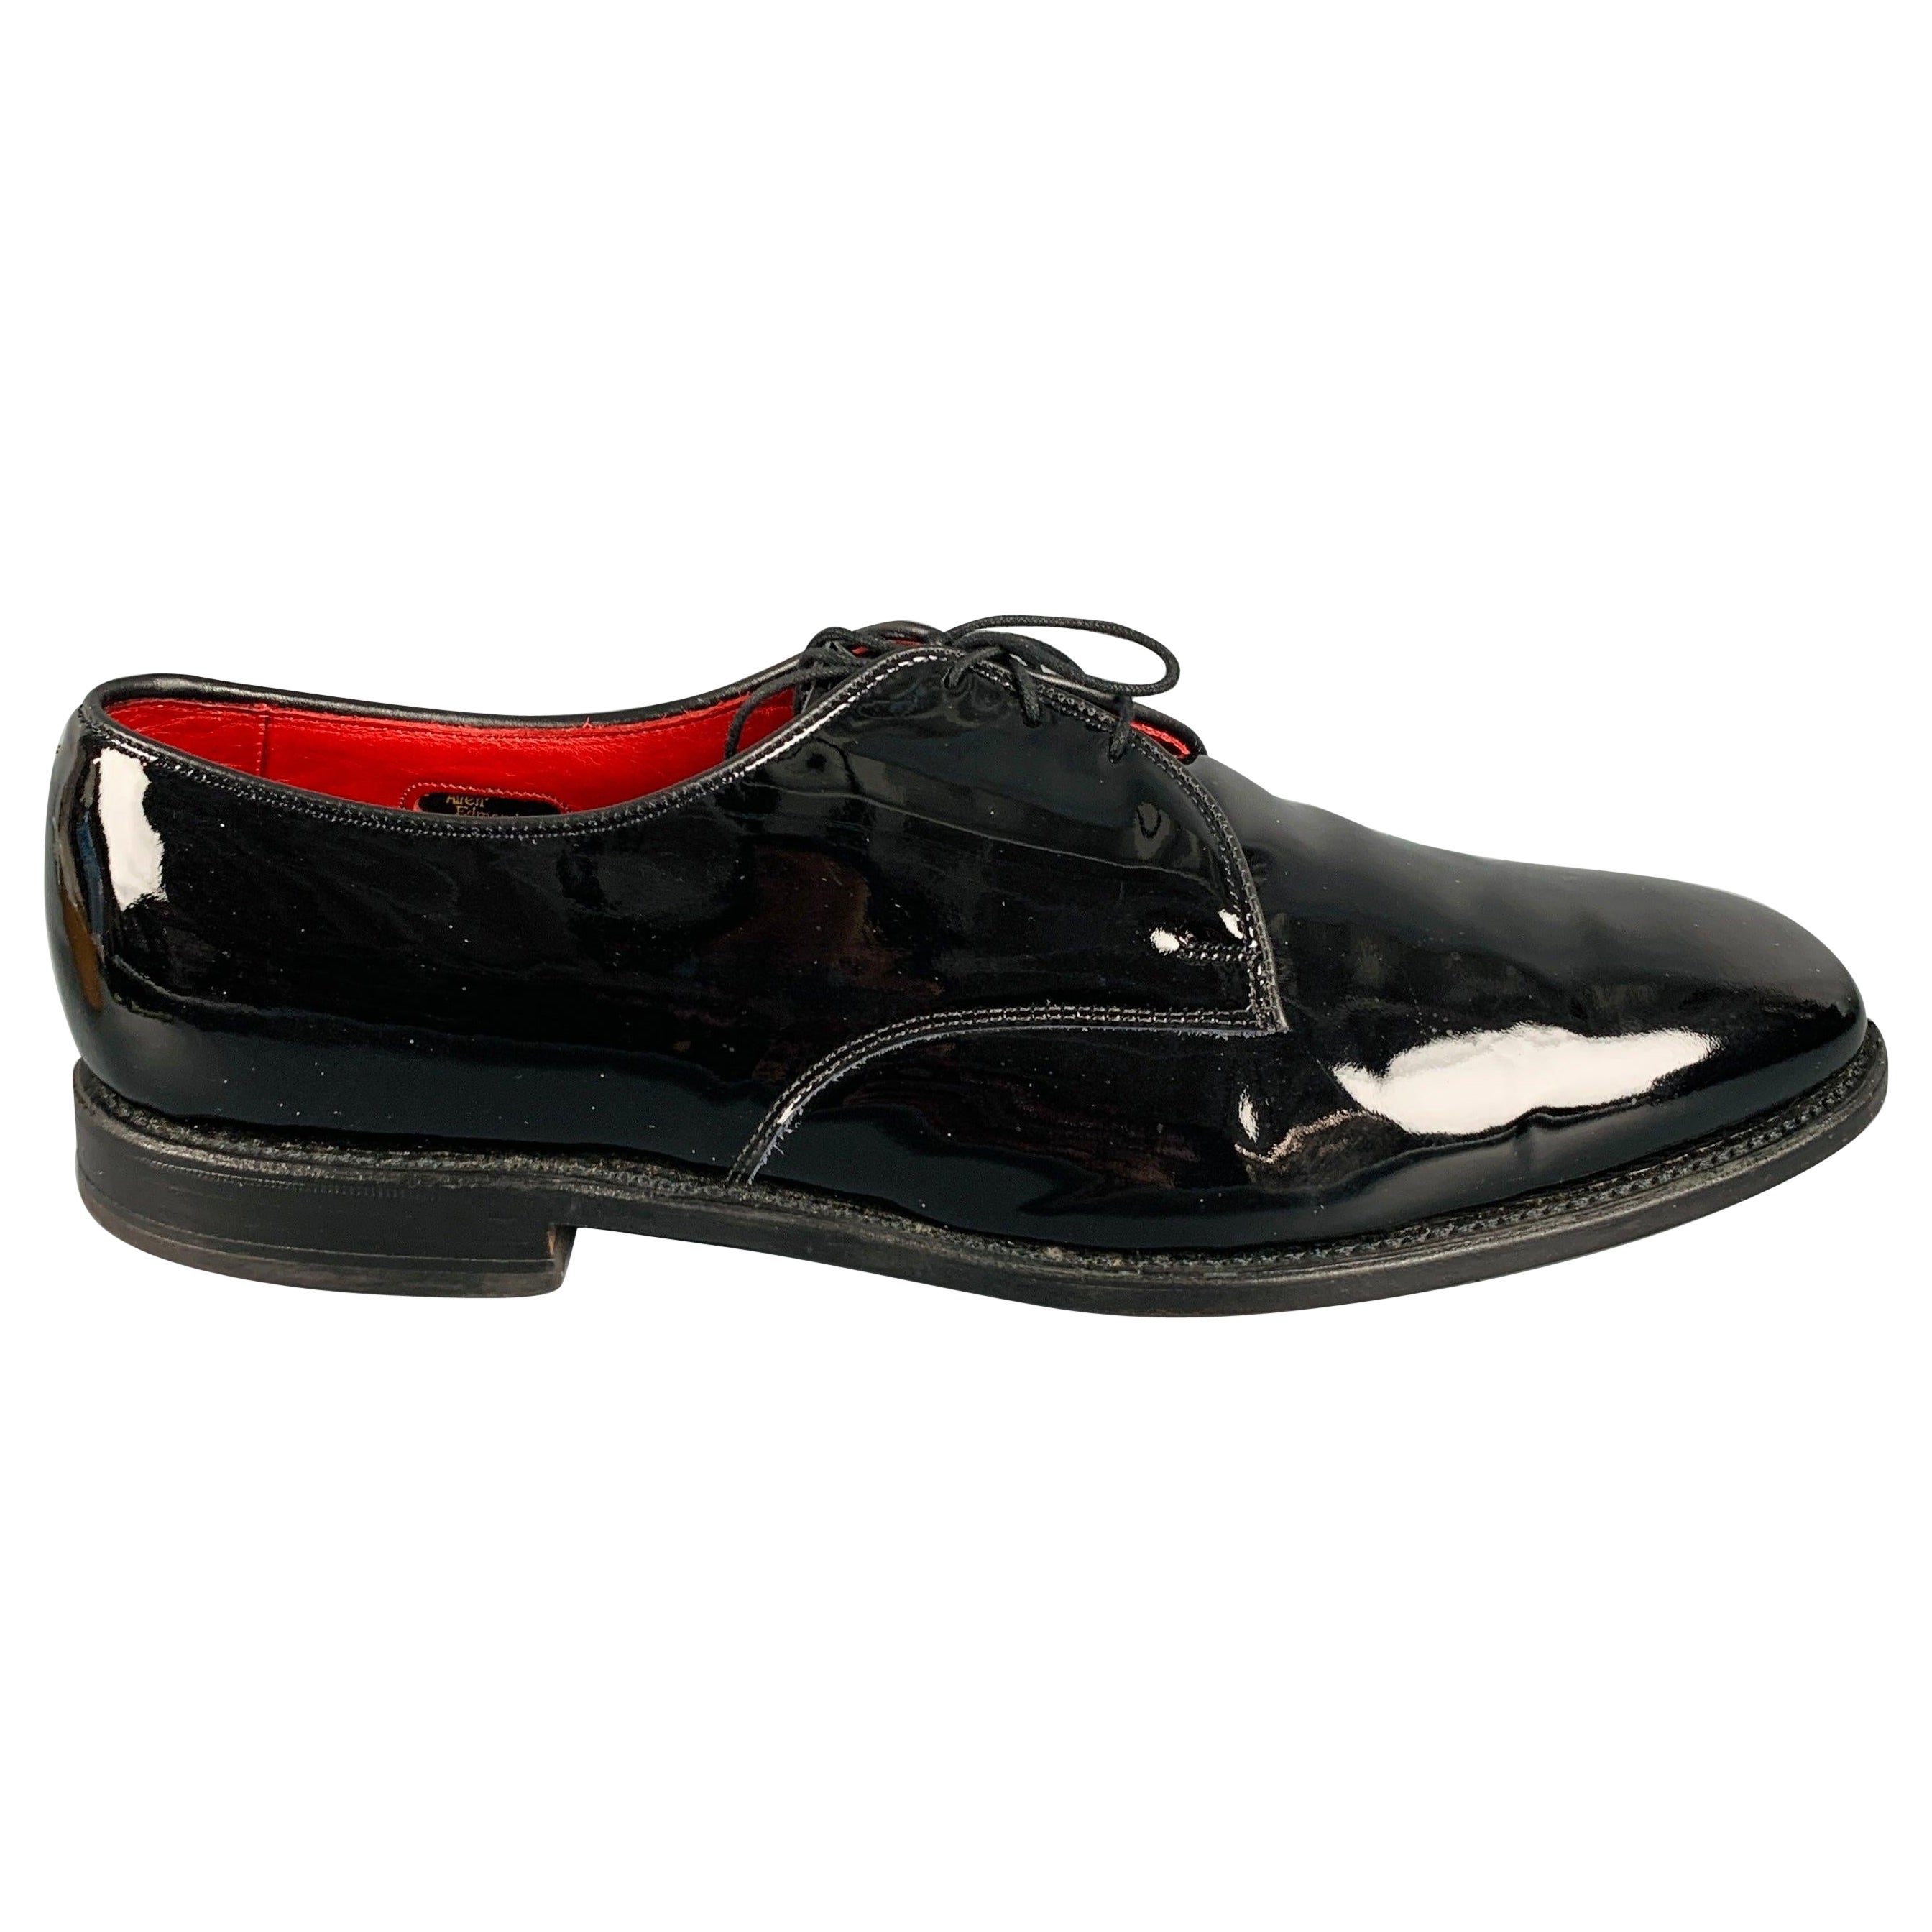 ALLEN EDMONDS Size 13 Black Patent Leather Lace-Up Shoes For Sale